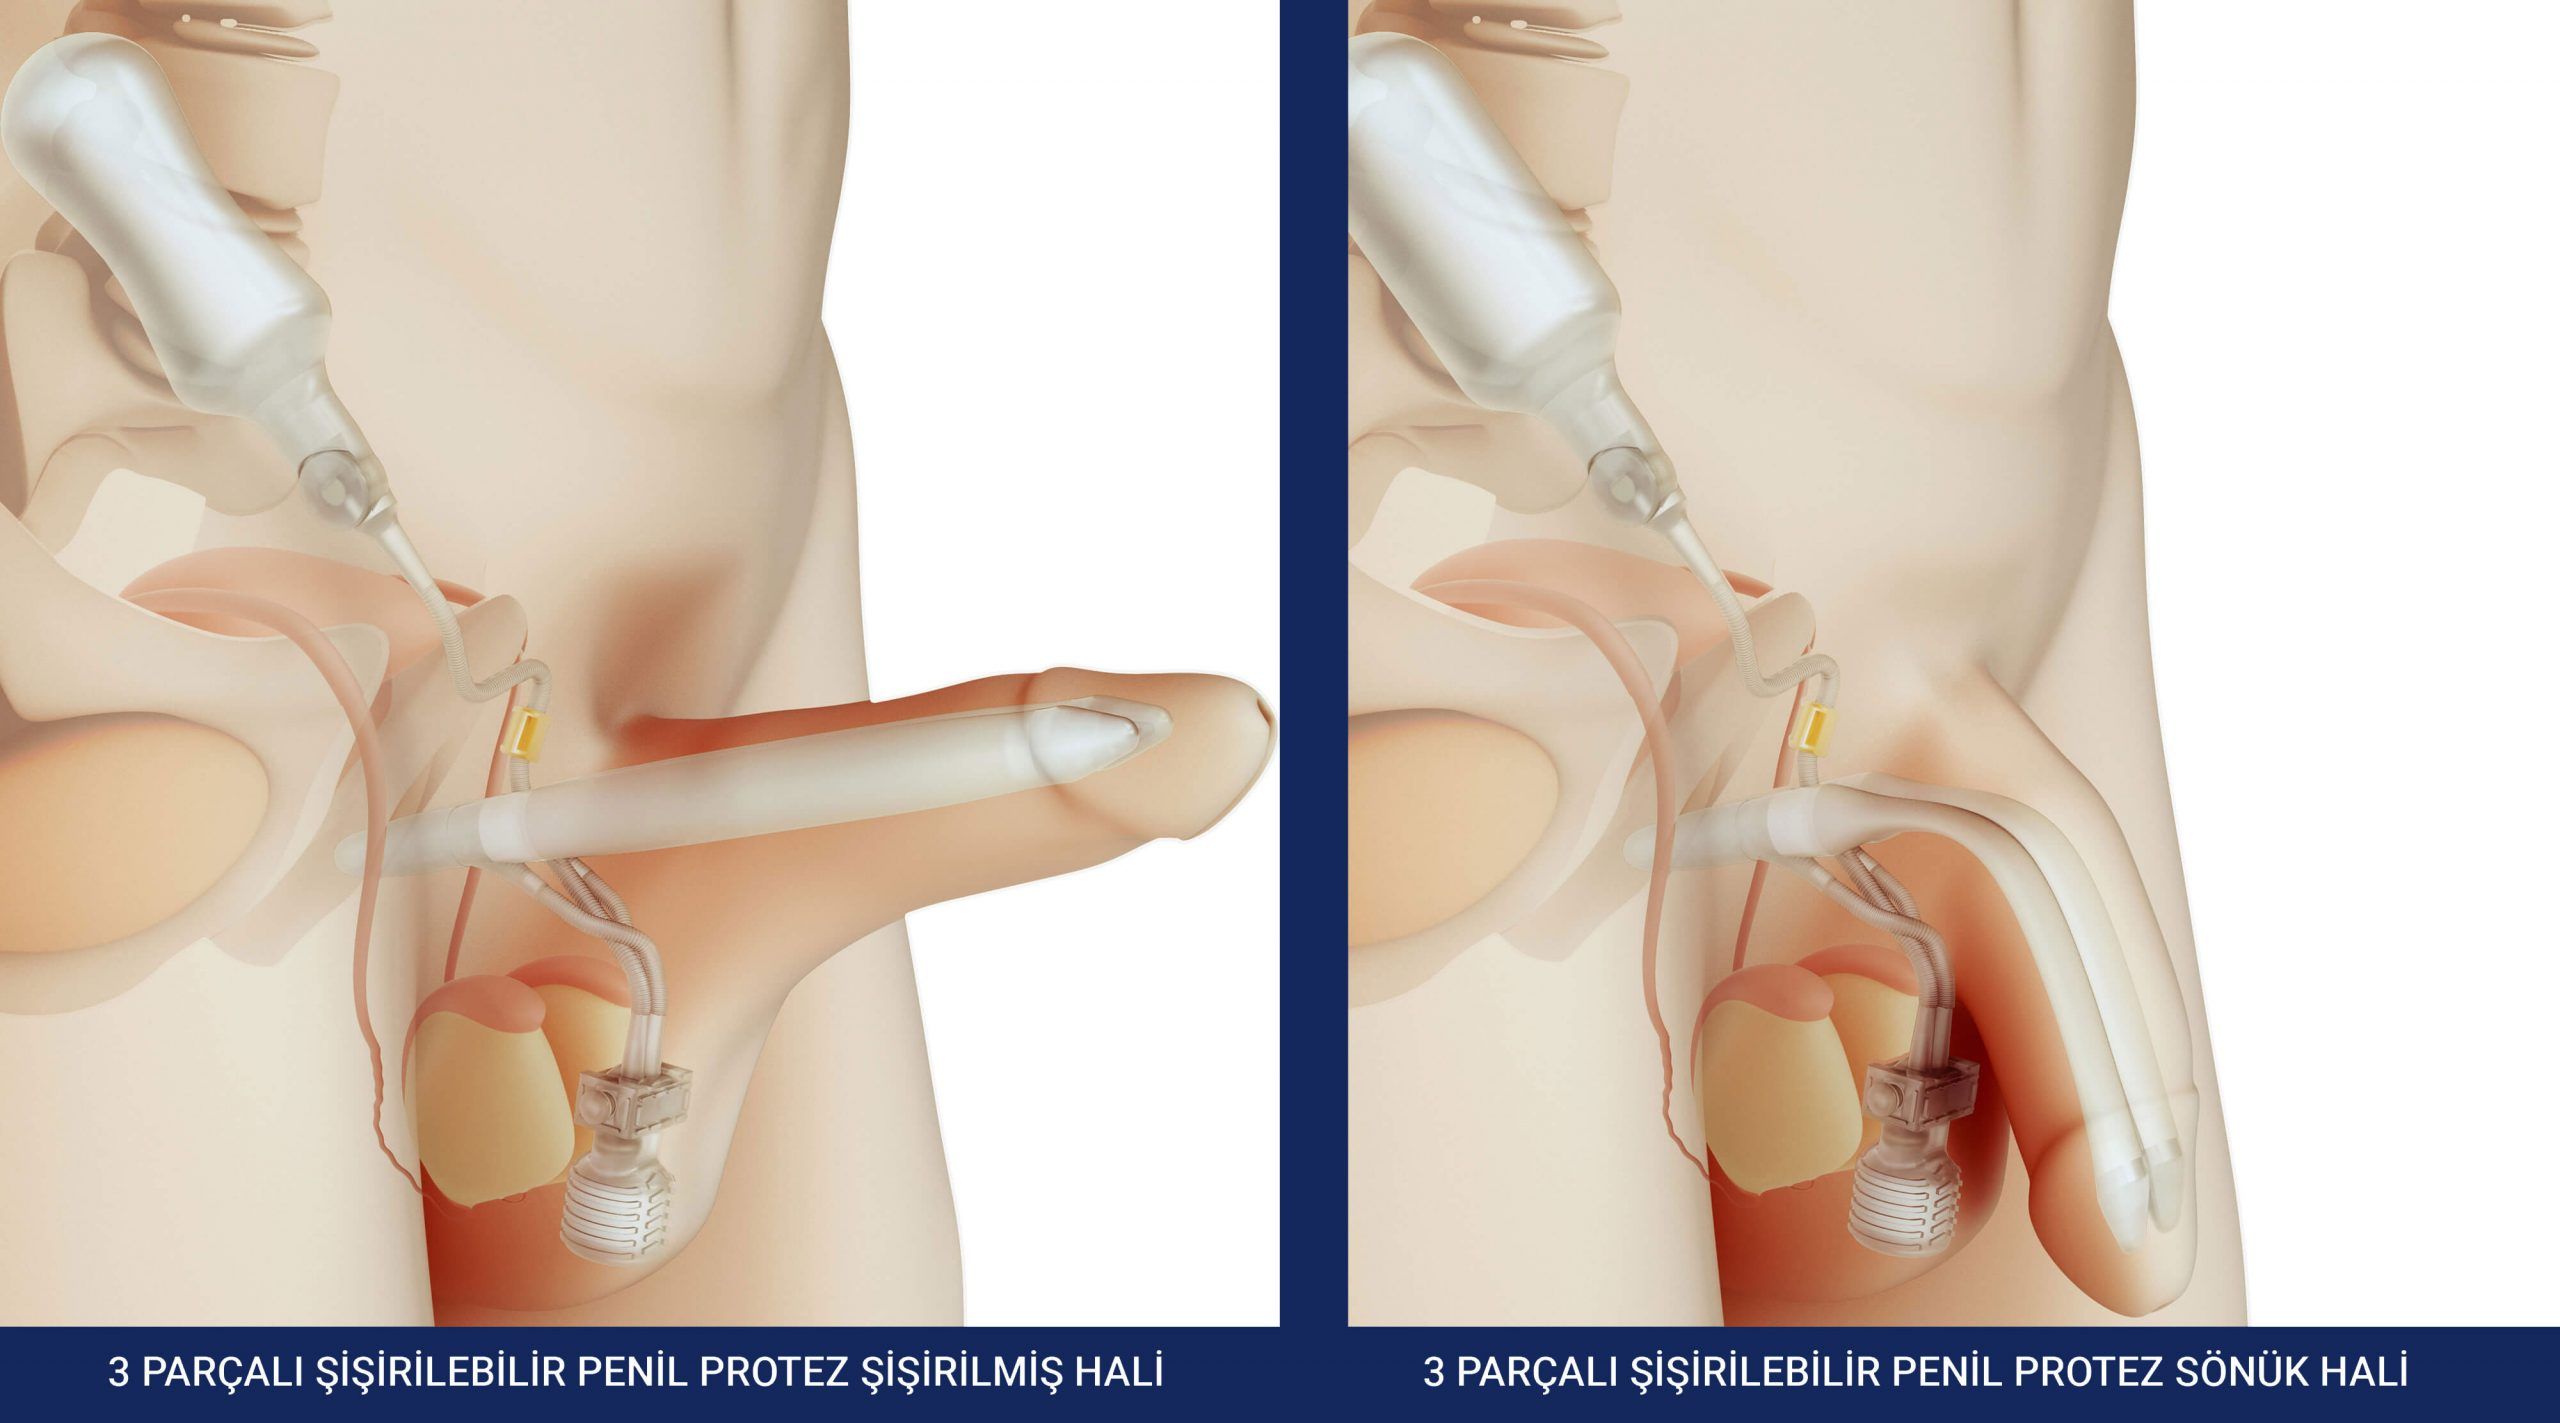 Sakarya Üroloji Doktorları: Erektil Disfonksiyon ve Penil Protez Yöntemleri